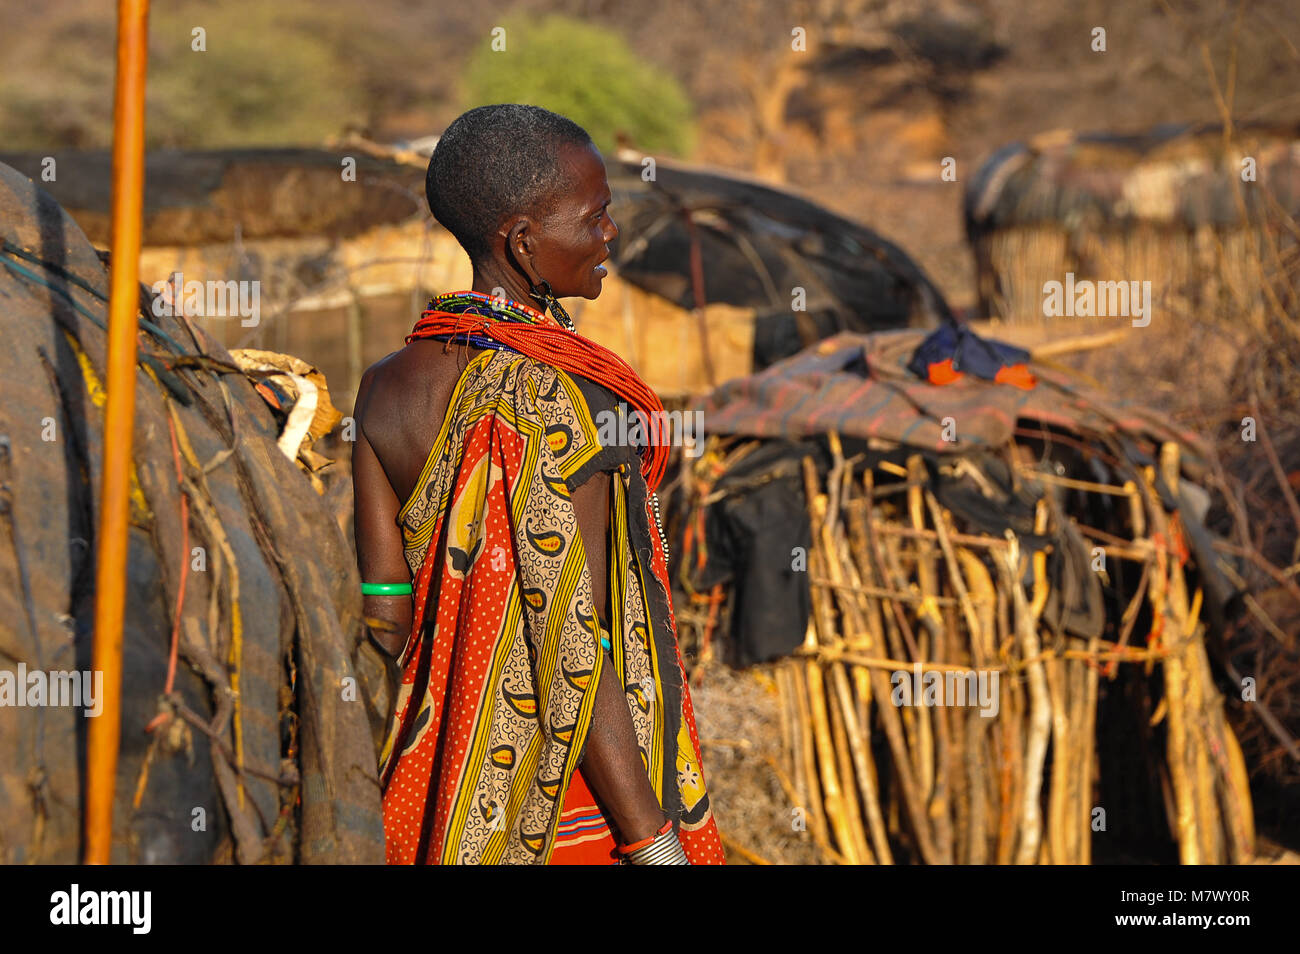 African tribeswoman indossando abiti colorati stand con torna alla fotocamera nel villaggio tradizionale o kraal. Ritratto che mostra una donna che indossa gioielli ornati Foto Stock